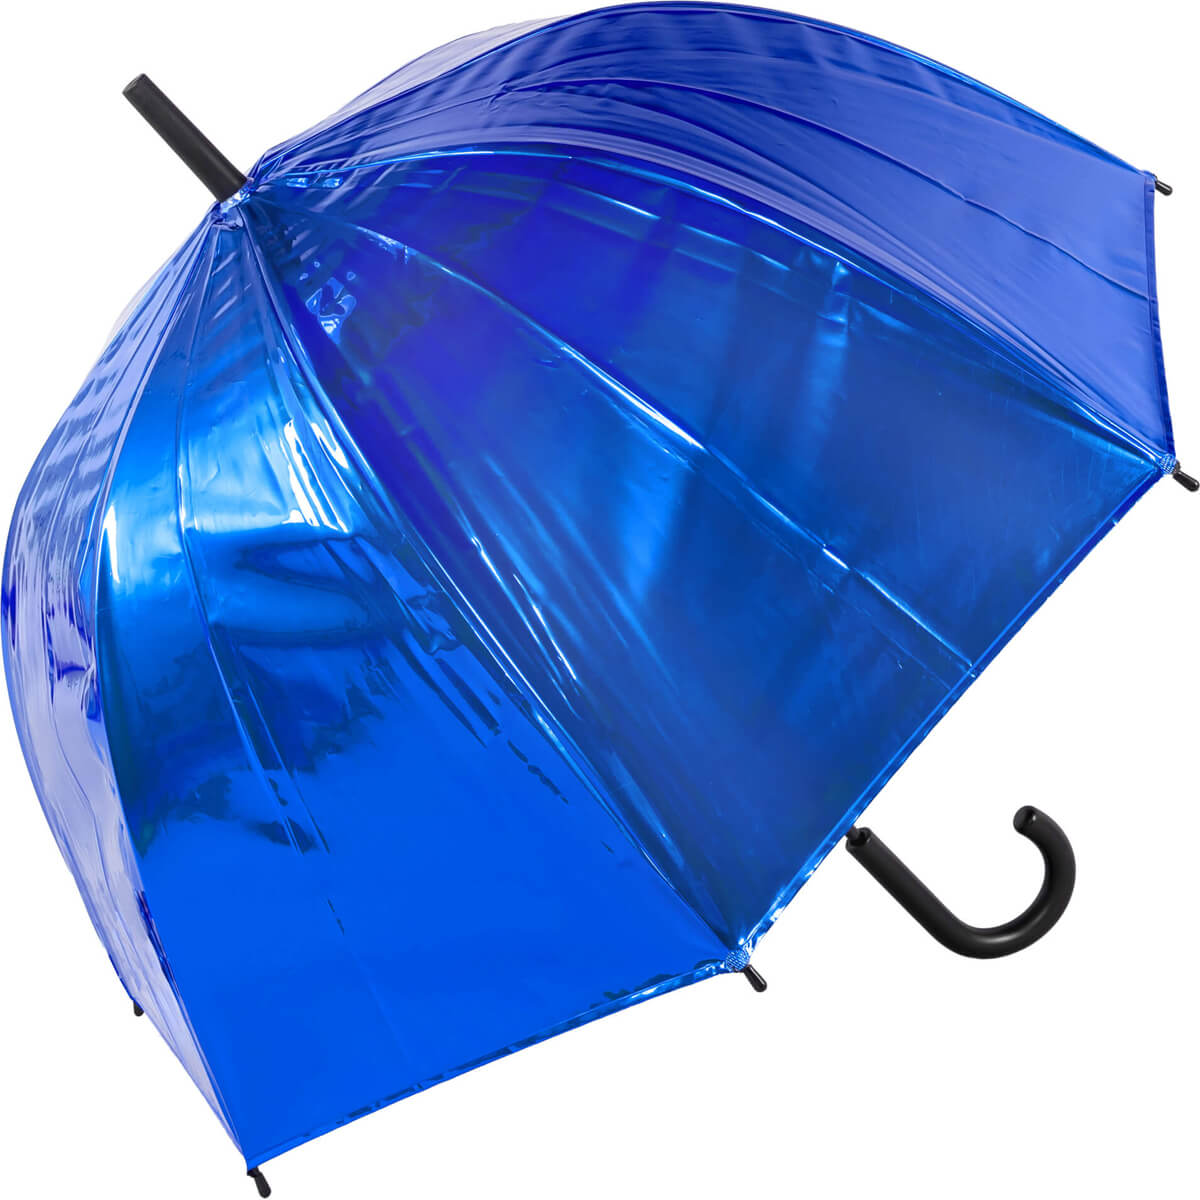 Auto Open Metallic Blue Bubble Dome Umbrella (18019)